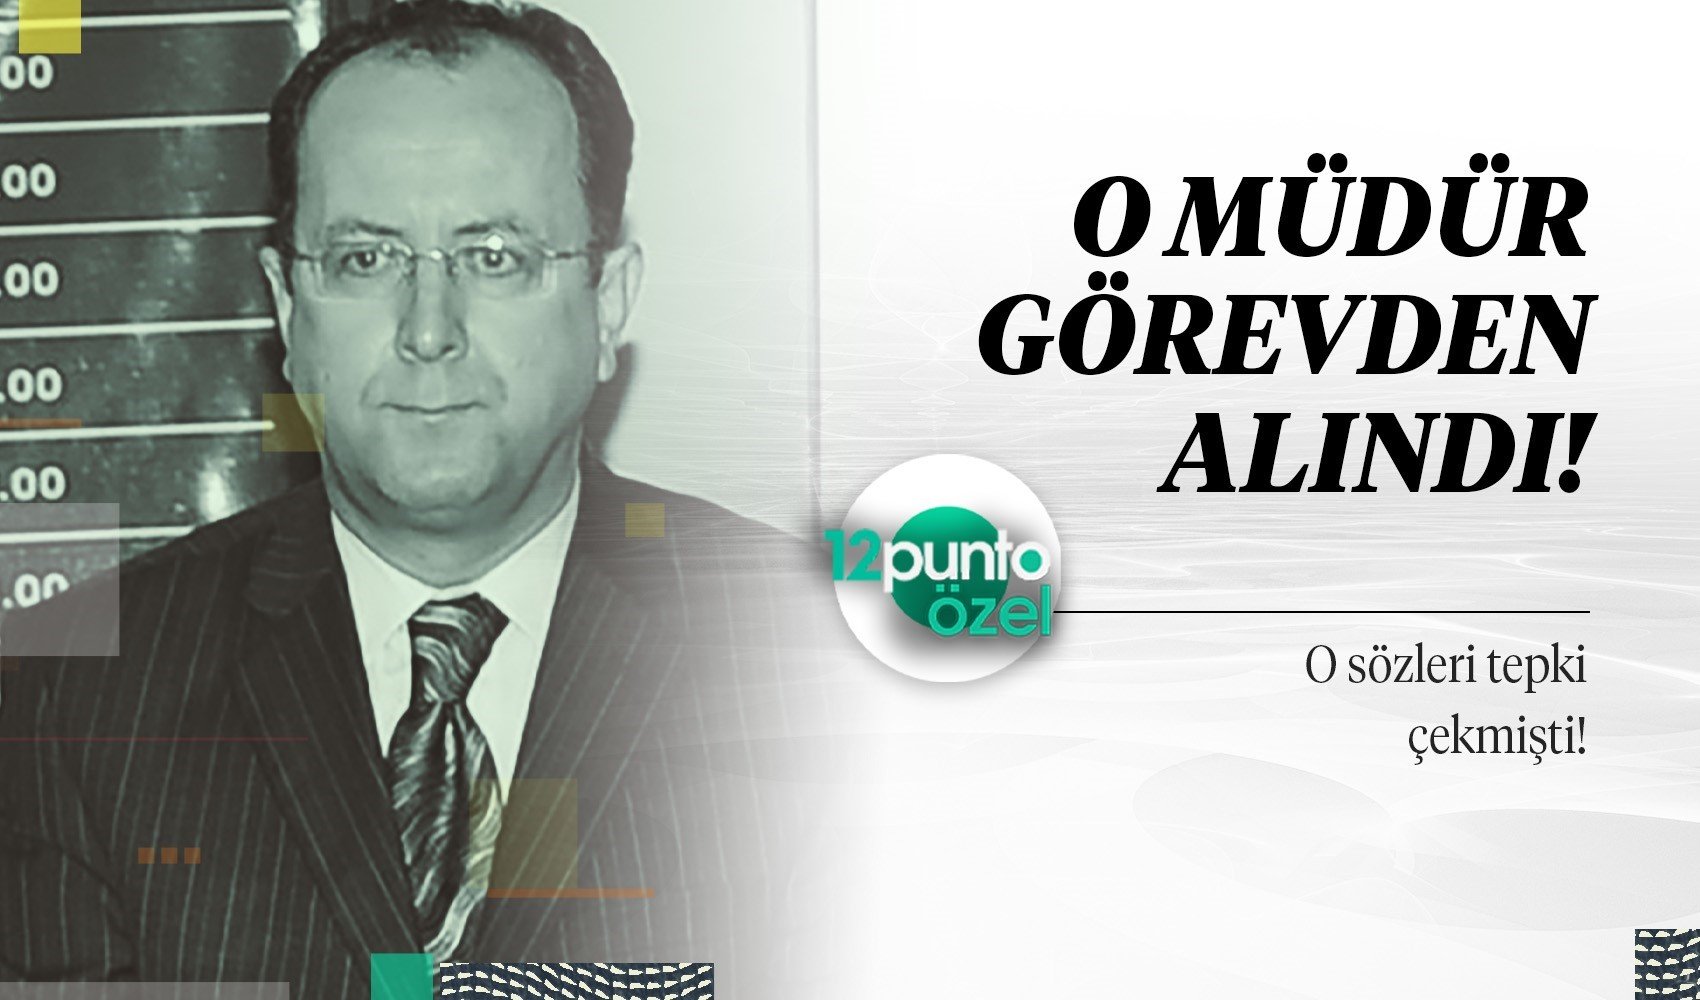 12punto arşivden çıkardı! Erdoğan’ın görevden aldığı Milli Eğitim müdürünün ‘harem selamlık’ mesajı